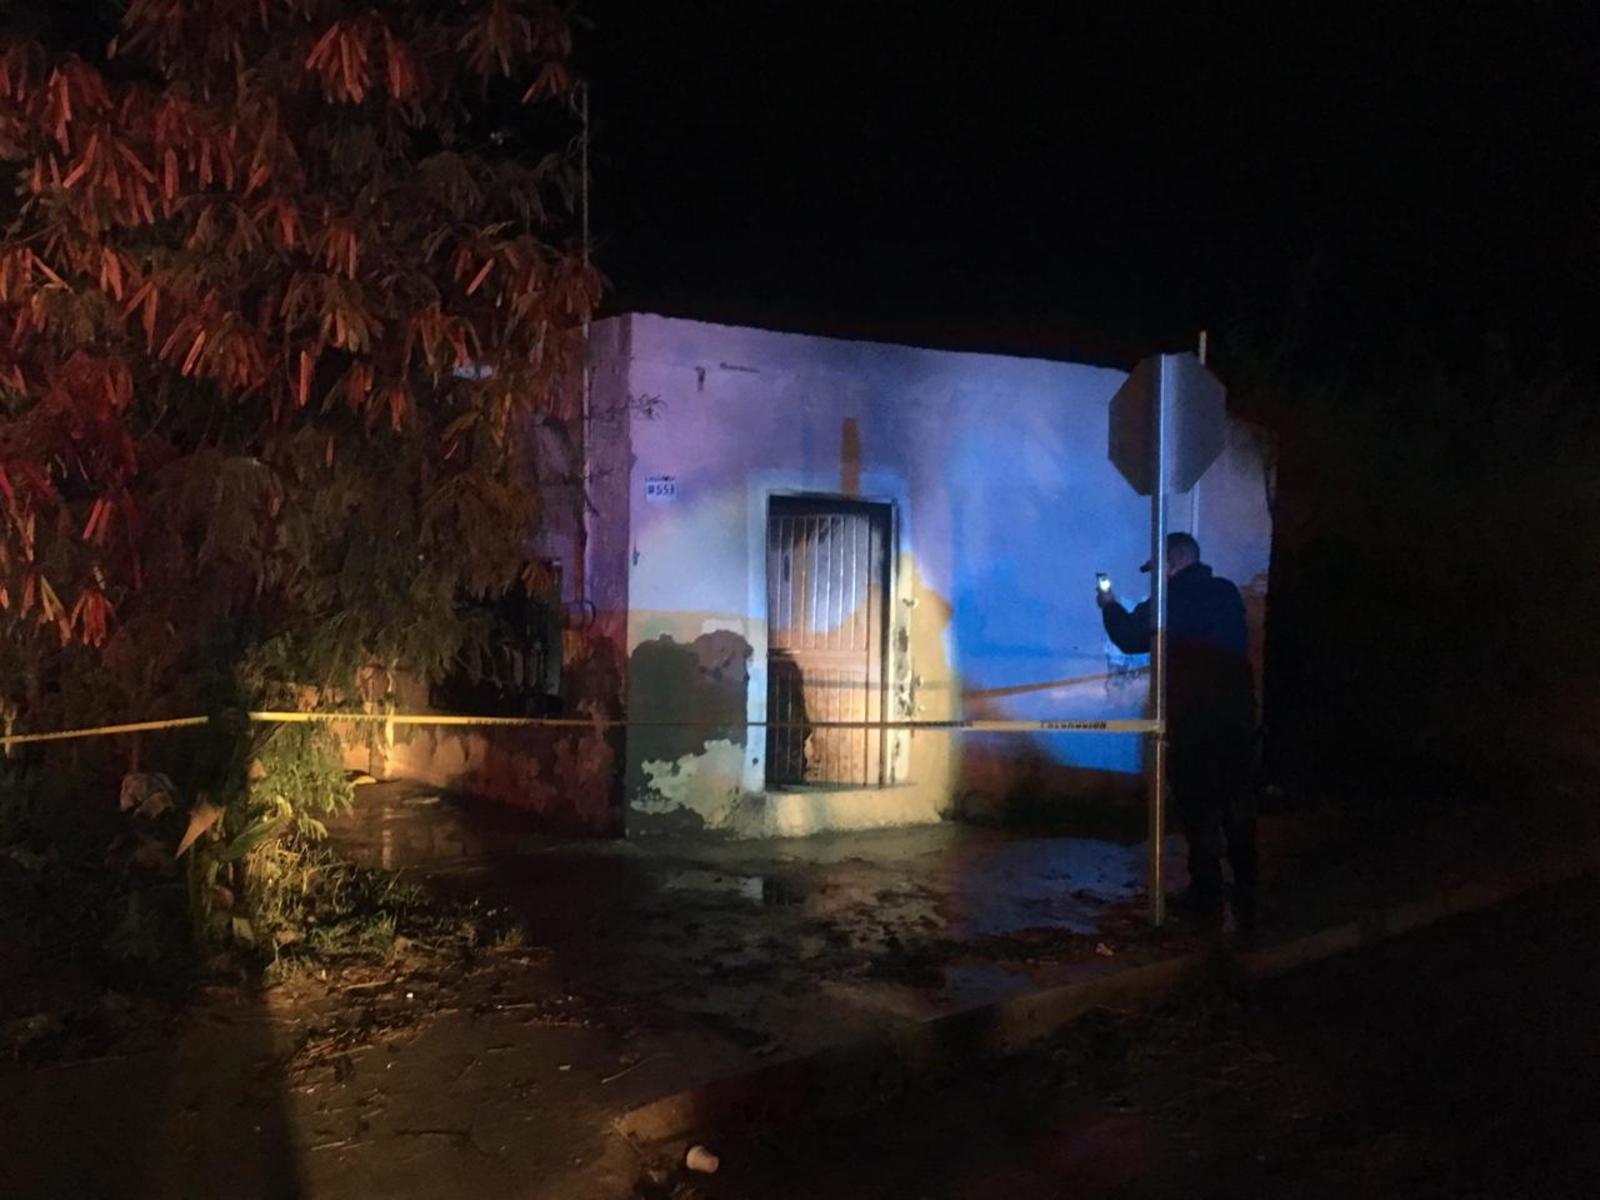 Fallecido. El incendio ocurrió la noche del viernes en un domicilio de la colonia San Isidro de Lerdo.